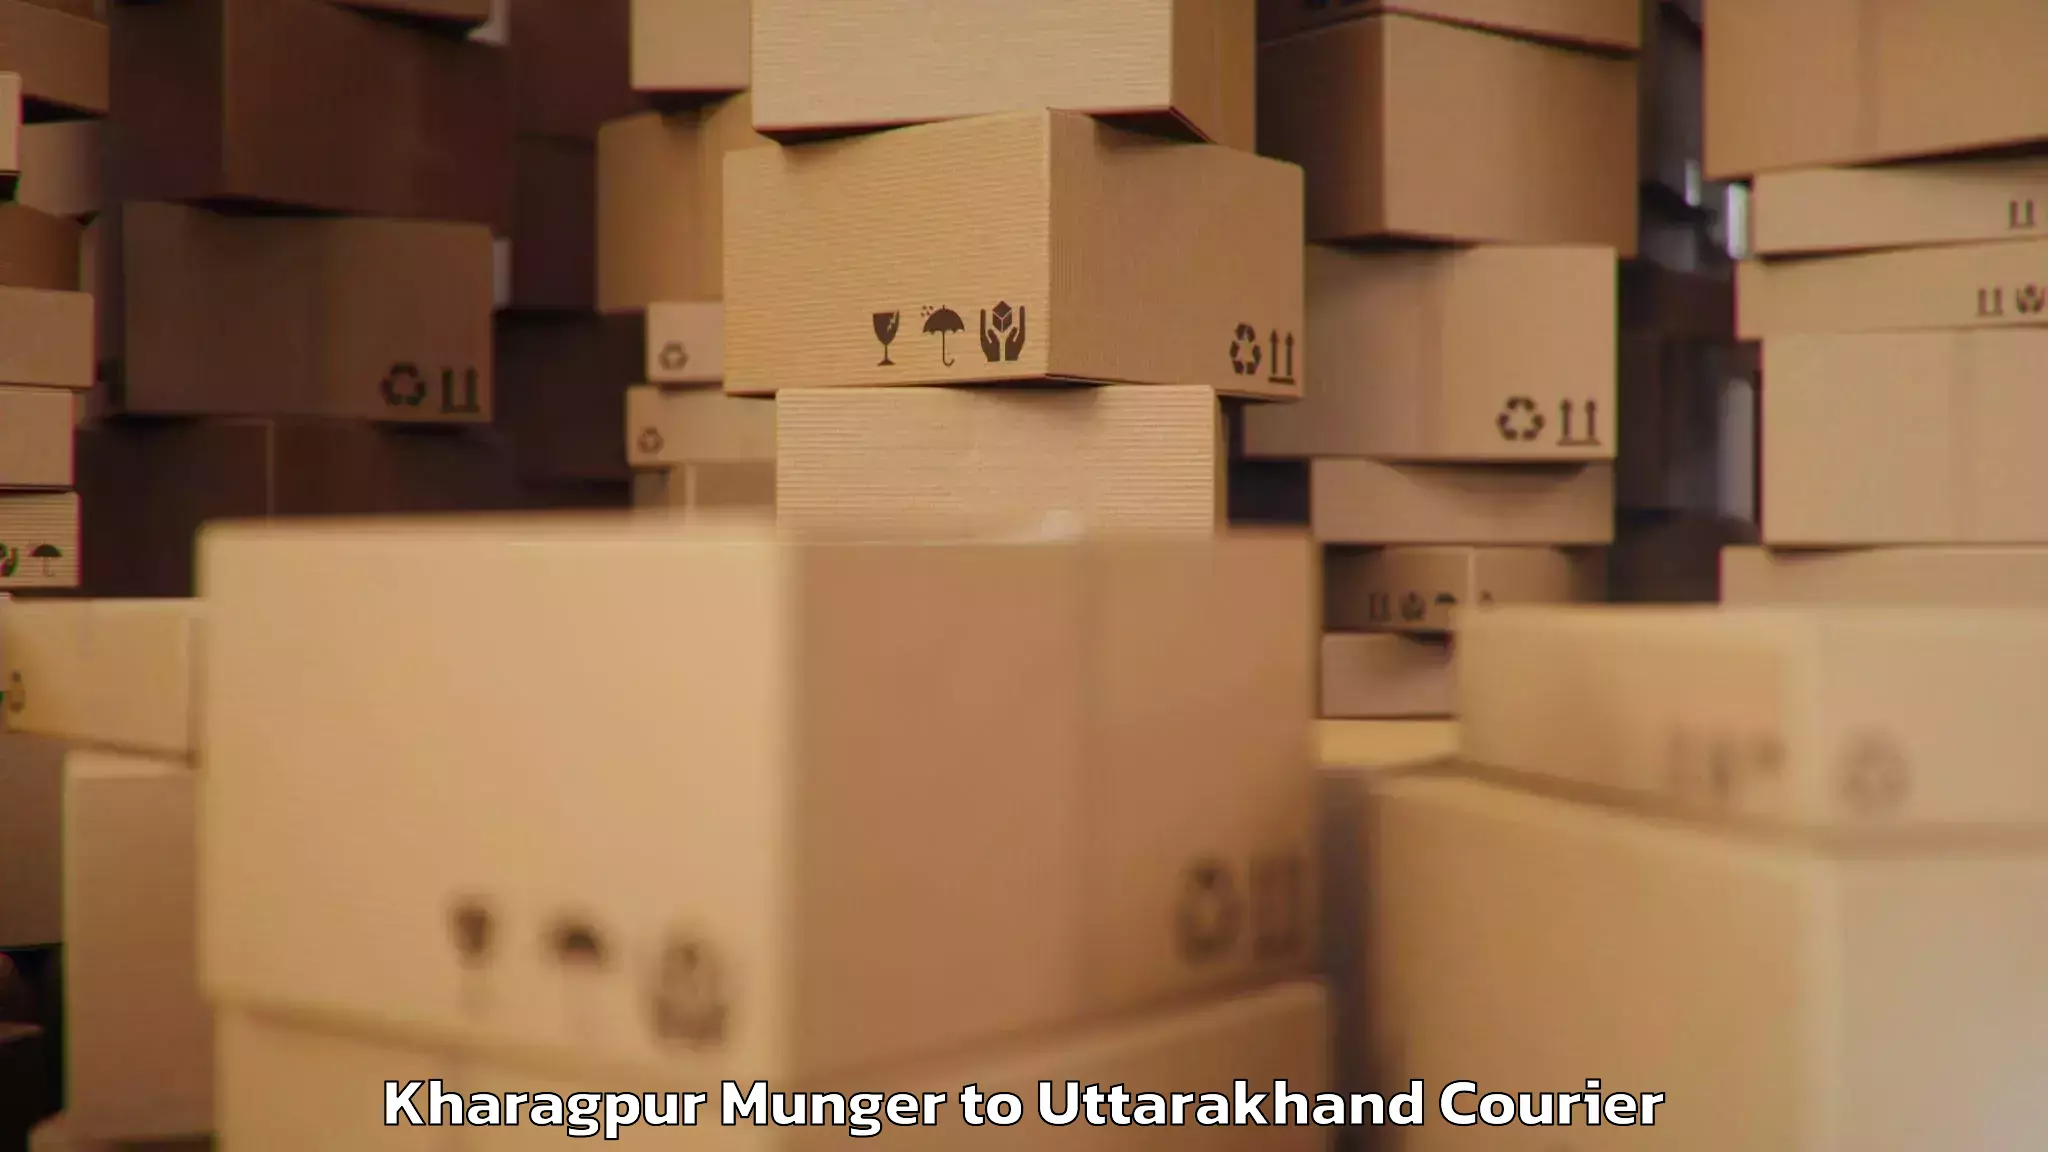 Luggage transport logistics in Kharagpur Munger to Baijnath Bageshwar